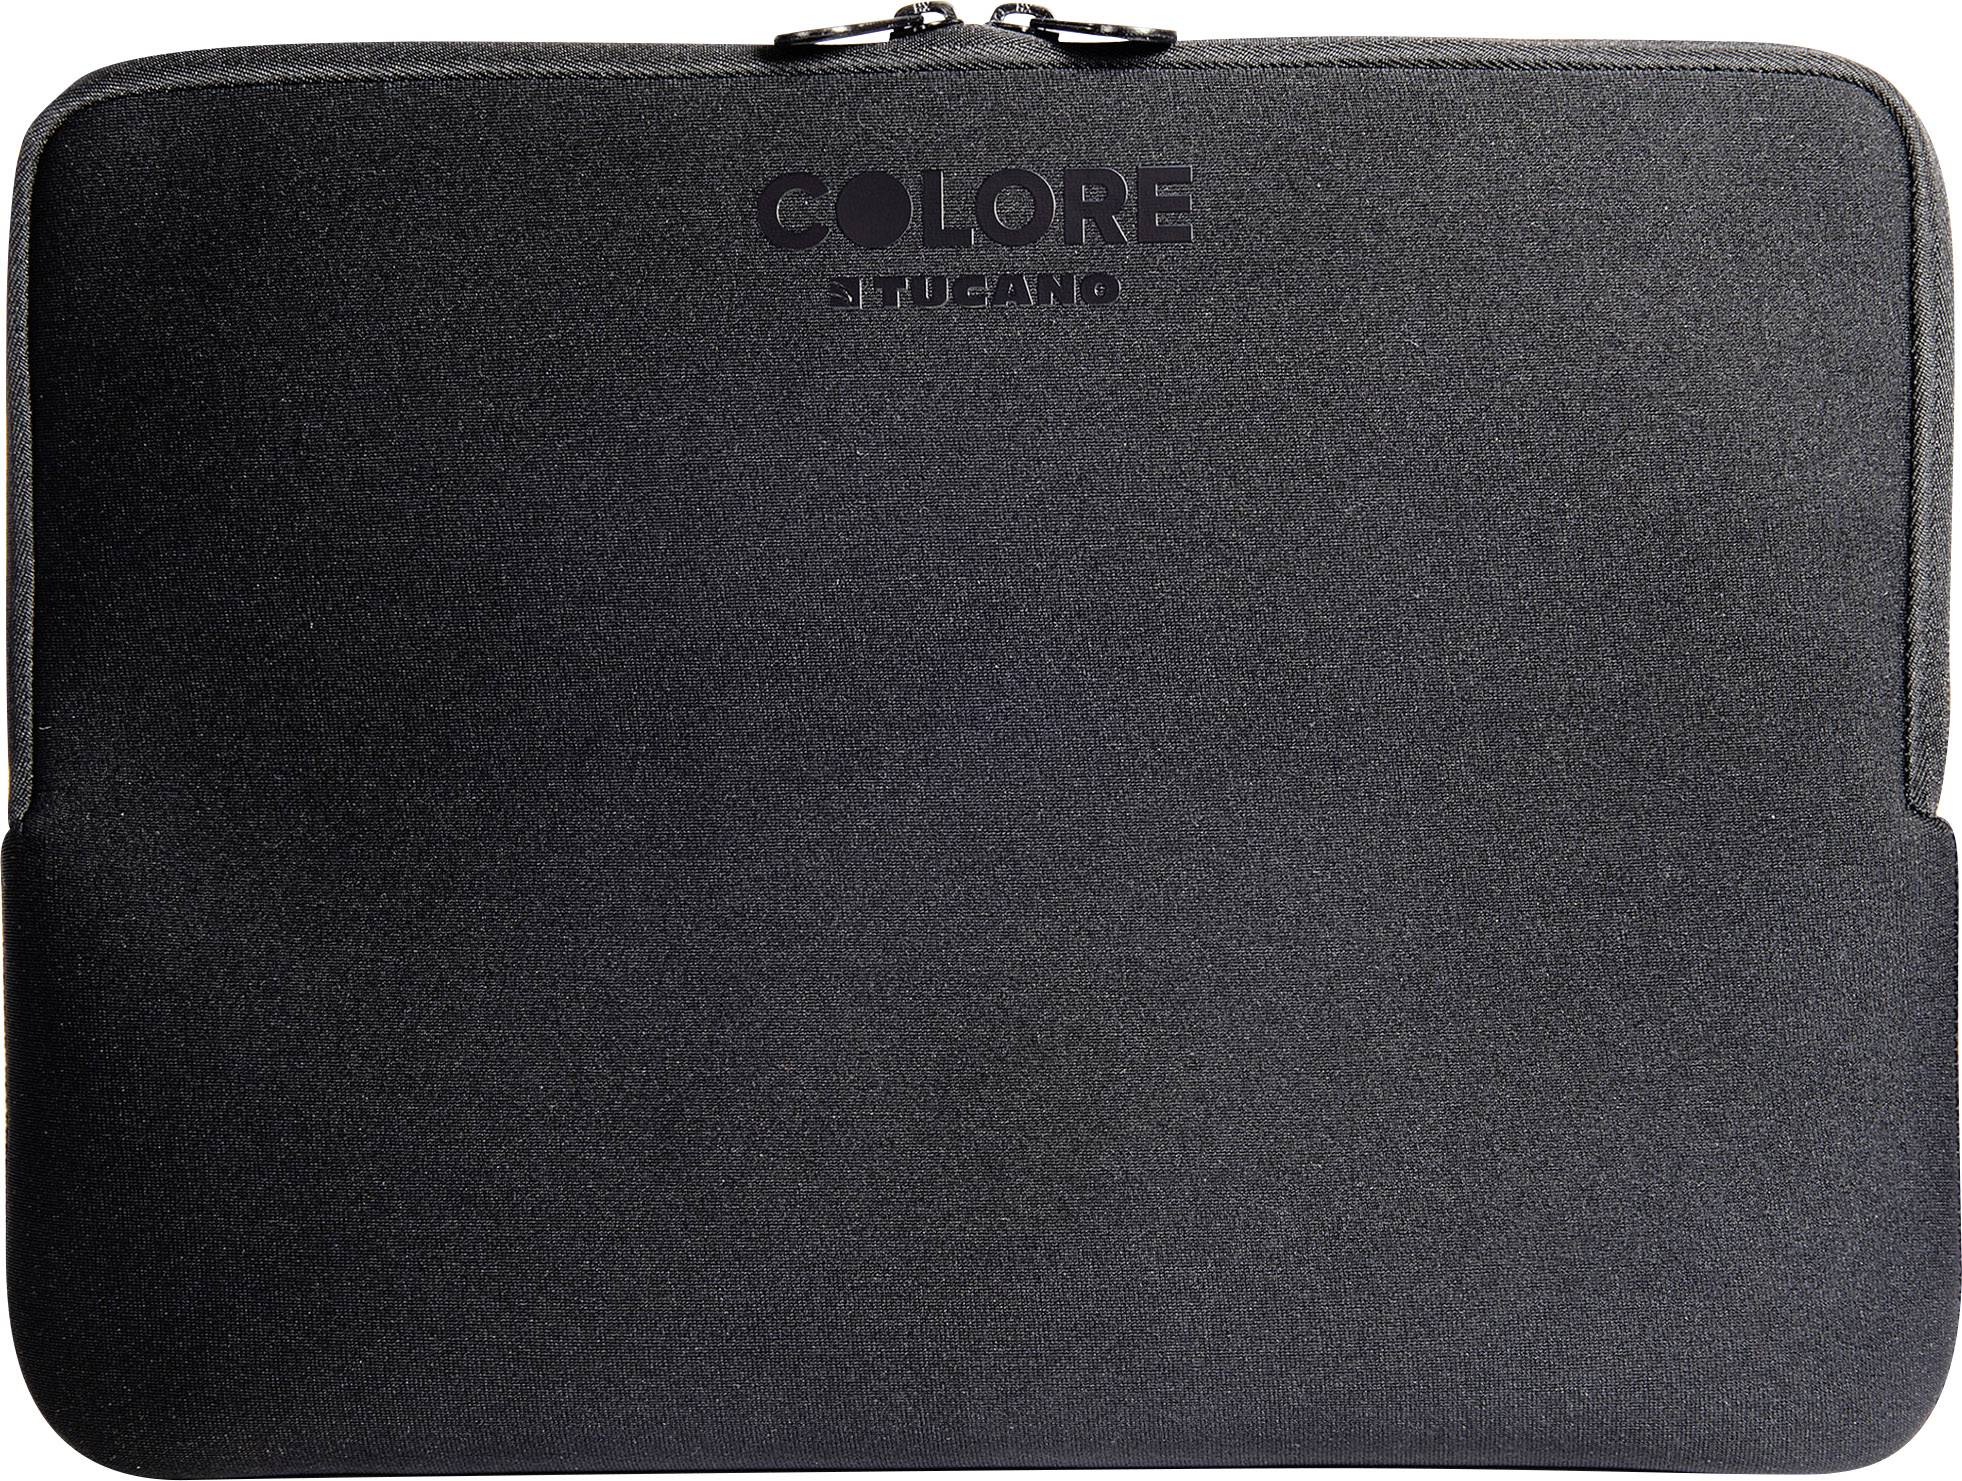 TUCANO S.R.L TUCANO Colore Second Skin 33,02cm 13Zoll Notebook schlanke Schutzhuelle Anti-Slip Flat-